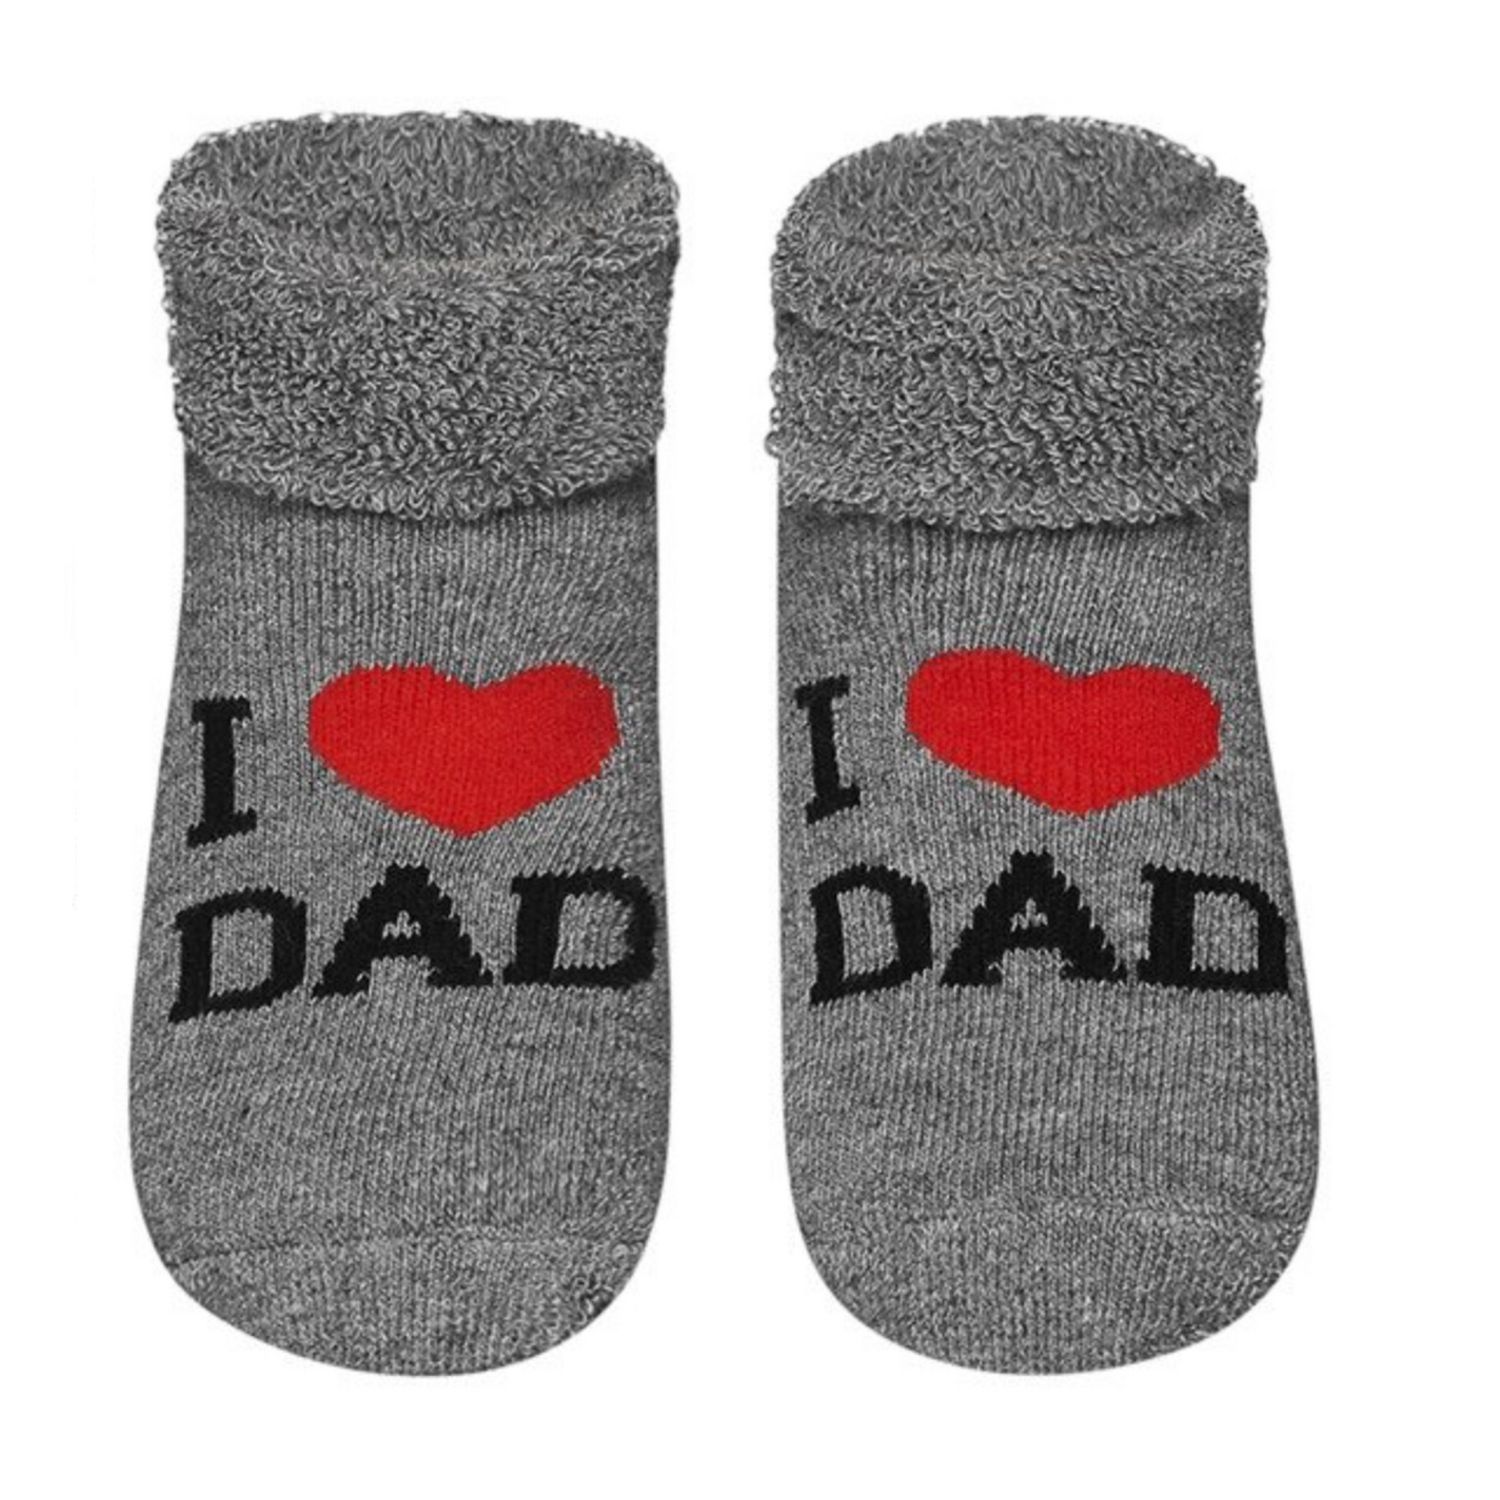 Lot de 2x chaussettes colorées SOXO pour bébé avec hochet - 12,99 €